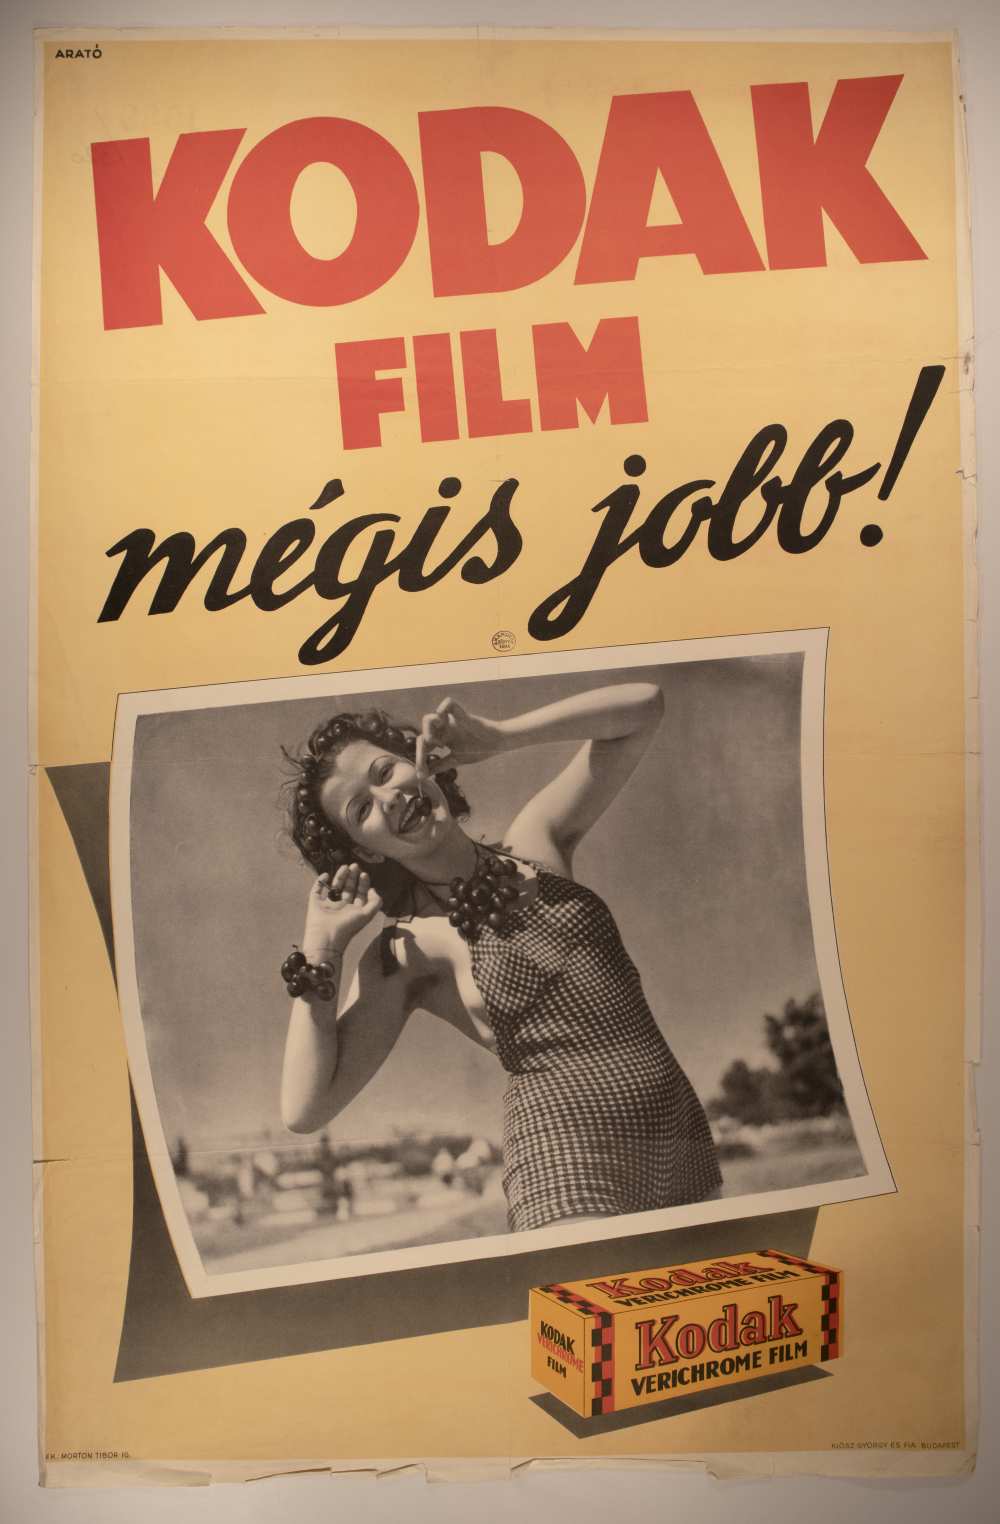 Kodak film mégis jobb! Grafikus: Arató. Jelzet: PKG.1939/320 – Térkép-, Plakát- és Kisnyomtatványtár http://nektar.oszk.hu/hu/manifestation/2877231